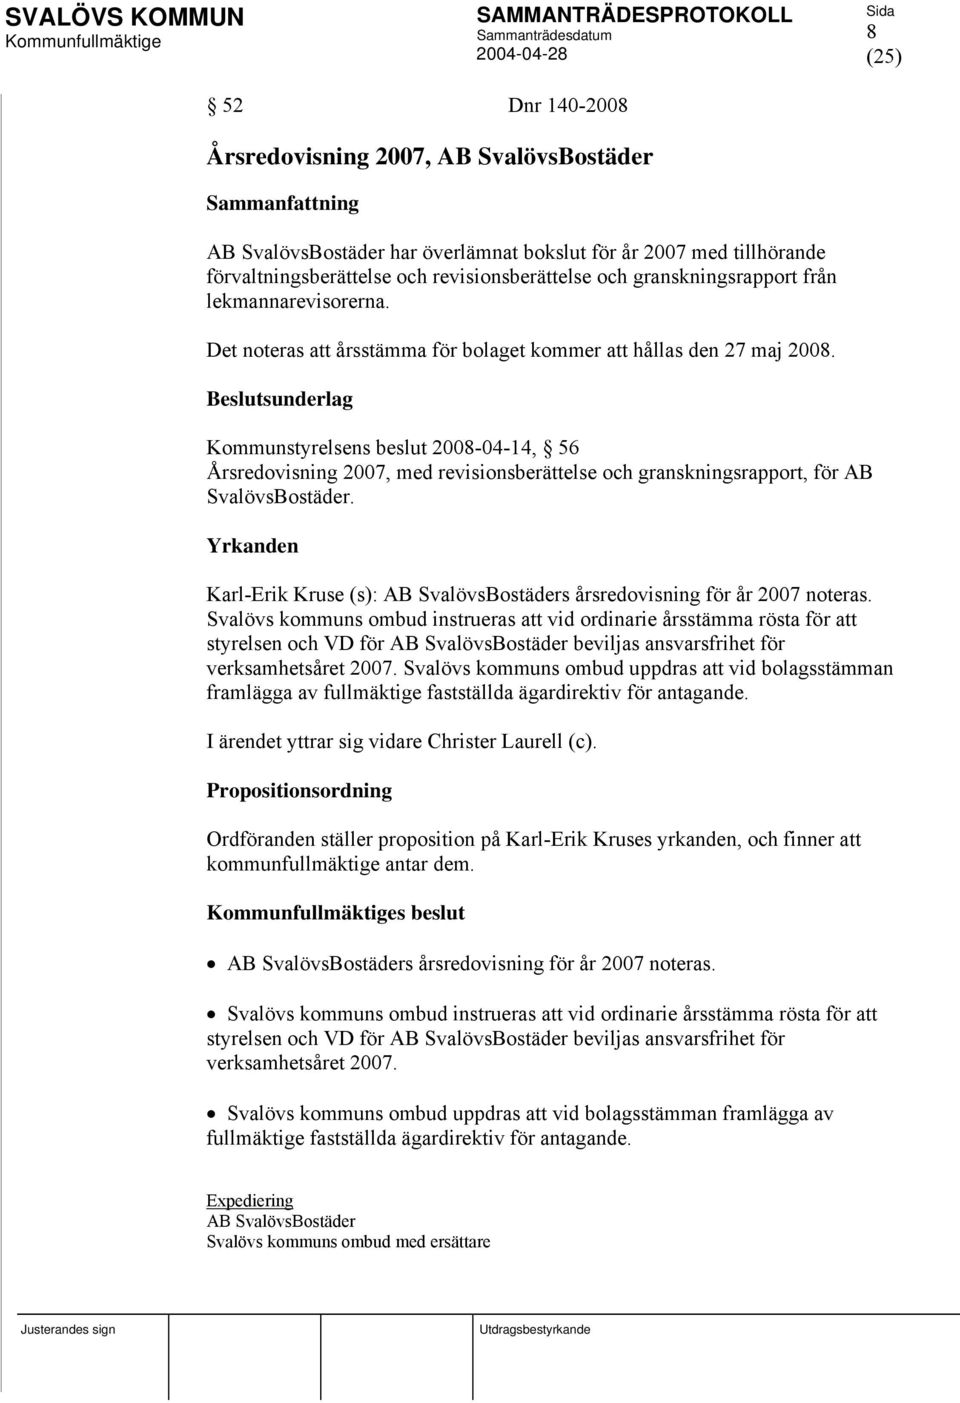 Kommunstyrelsens beslut 2008-04-14, 56 Årsredovisning 2007, med revisionsberättelse och granskningsrapport, för AB SvalövsBostäder.